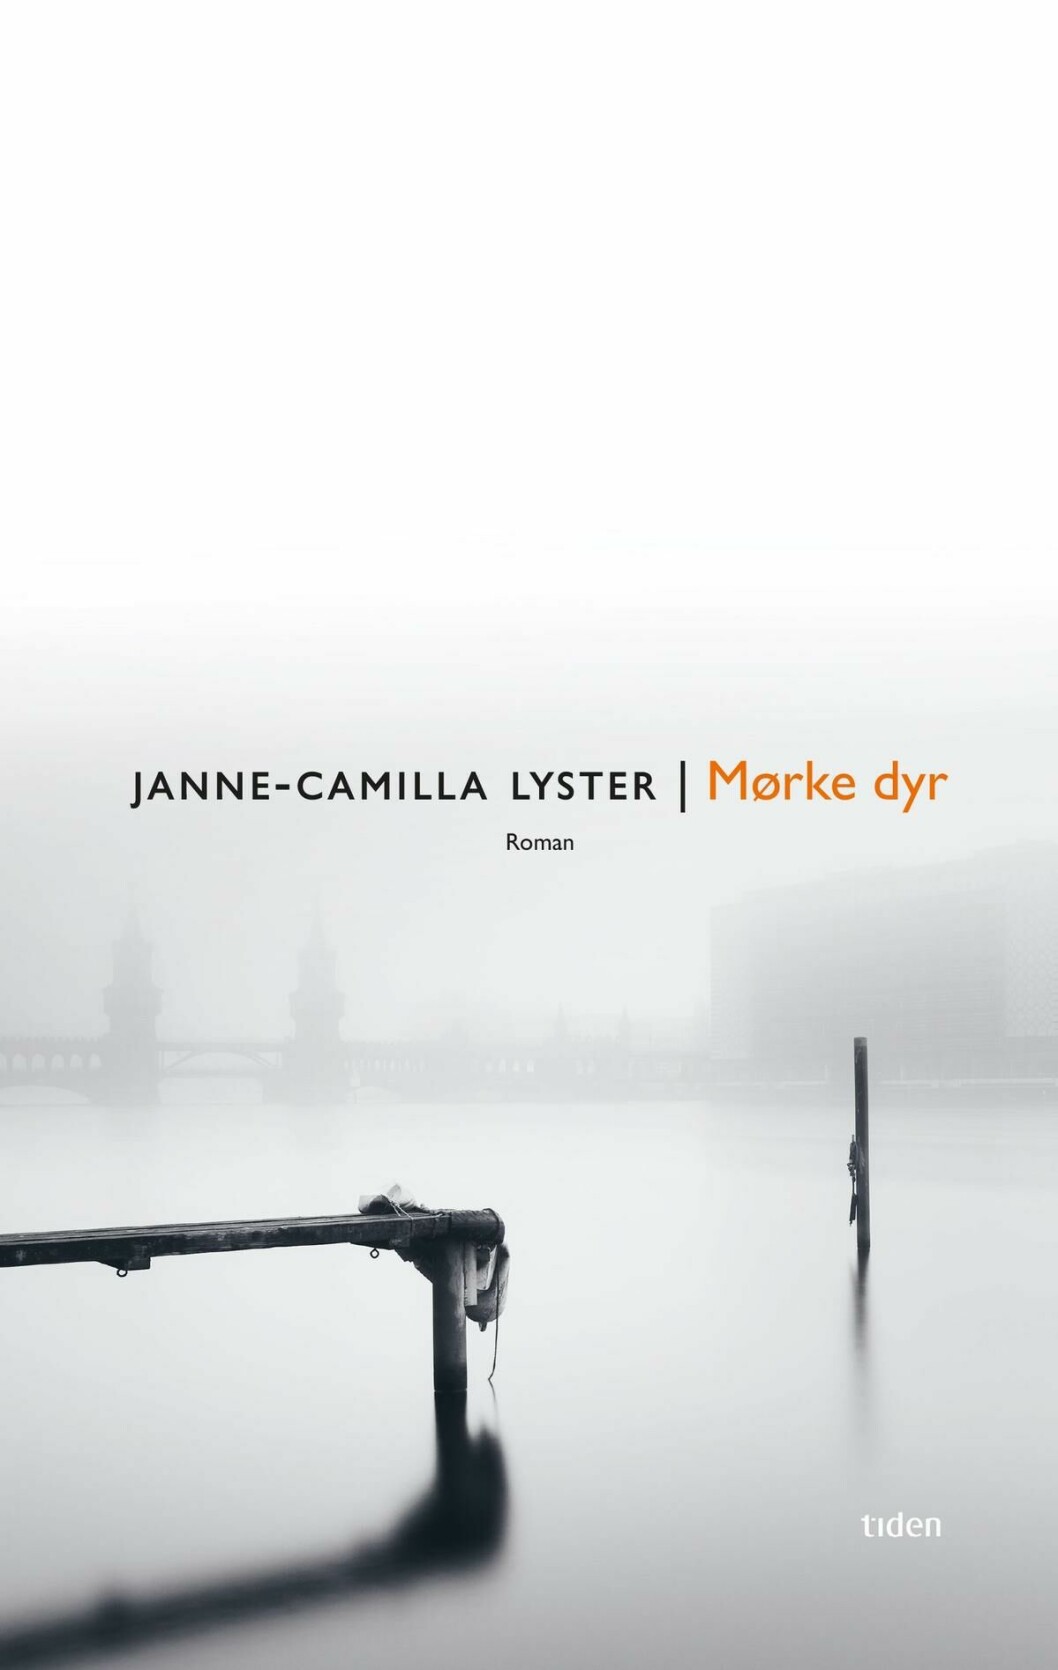 VENTETID: De store høydepunktene lar vente på seg i Janne-Camilla Lysters debutroman, skriver Universitas' anmelder.